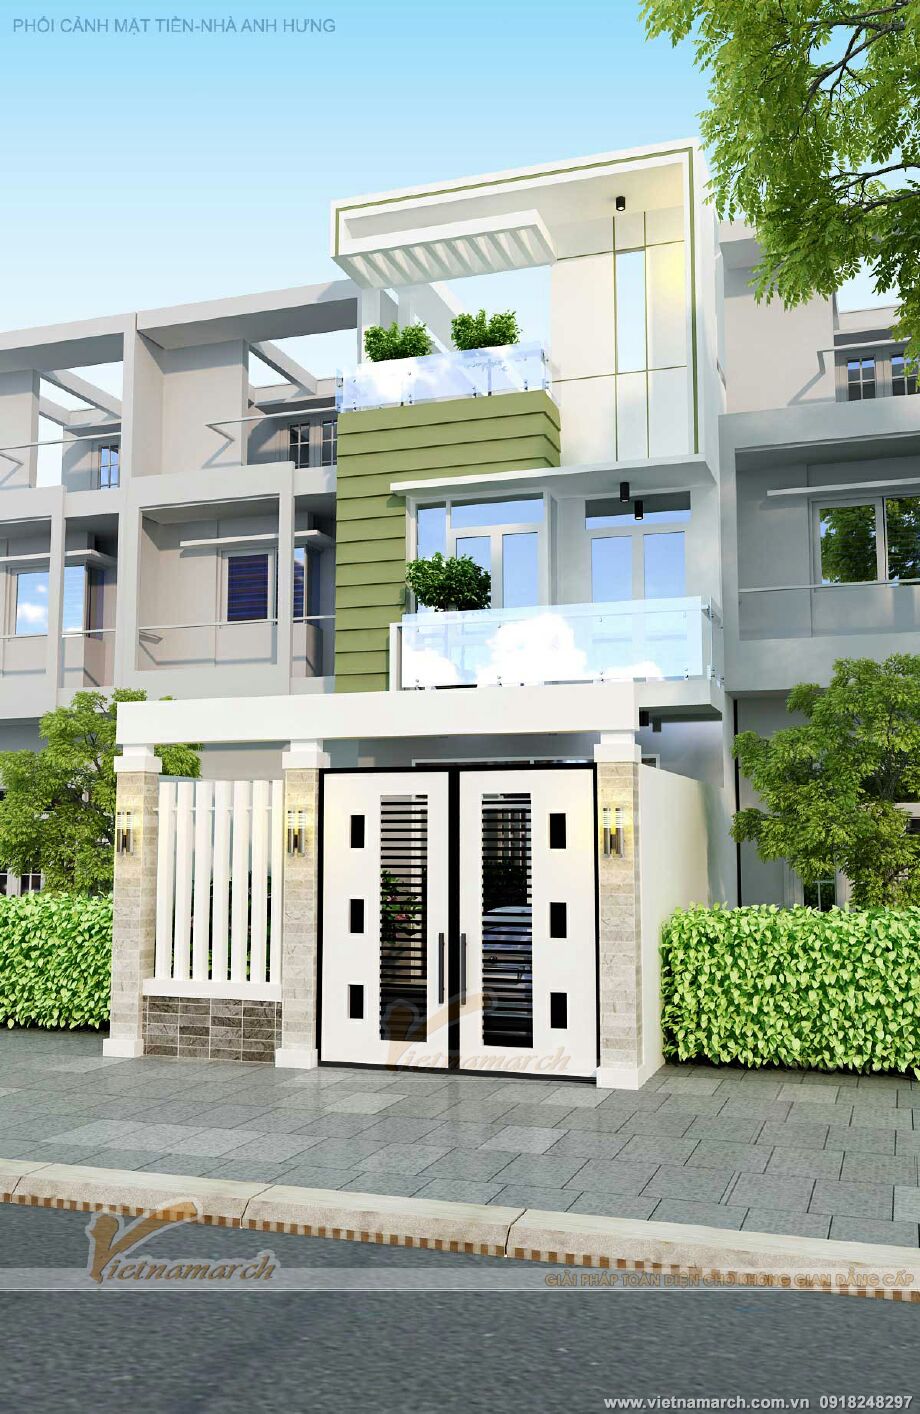 Thiết kế nhà lô phố 3 tầng hiện đại tại Nam Định > Thiết kế nhà lô phố 3 tầng hiện đại tại Nam Định 